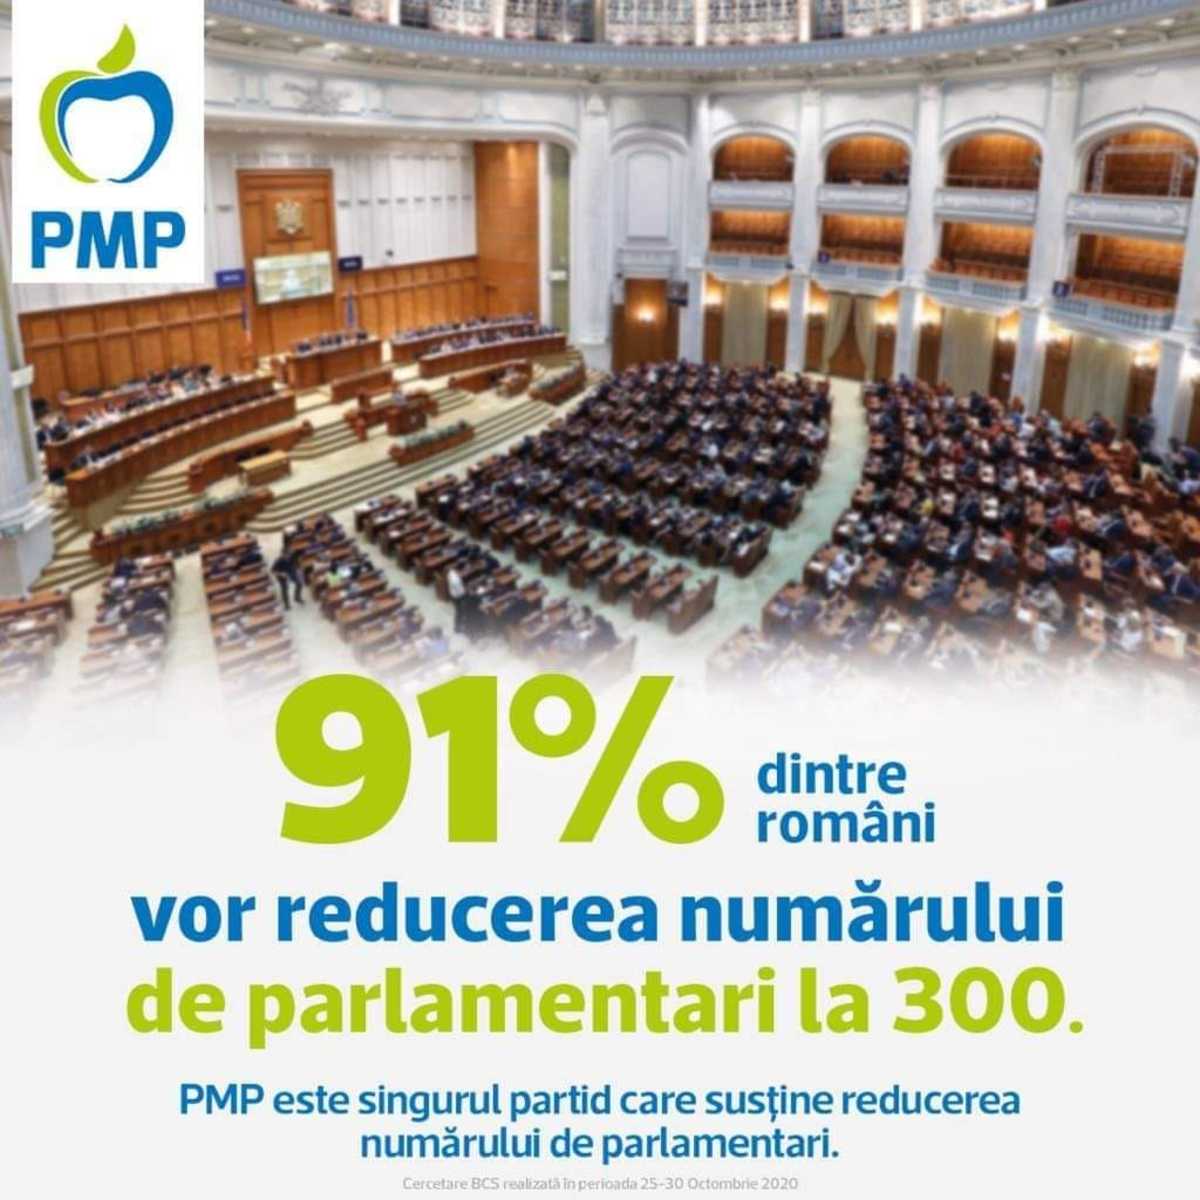 Pact pentru reducerea la 300 a numărului de parlamentari și eliminarea pensiilor speciale